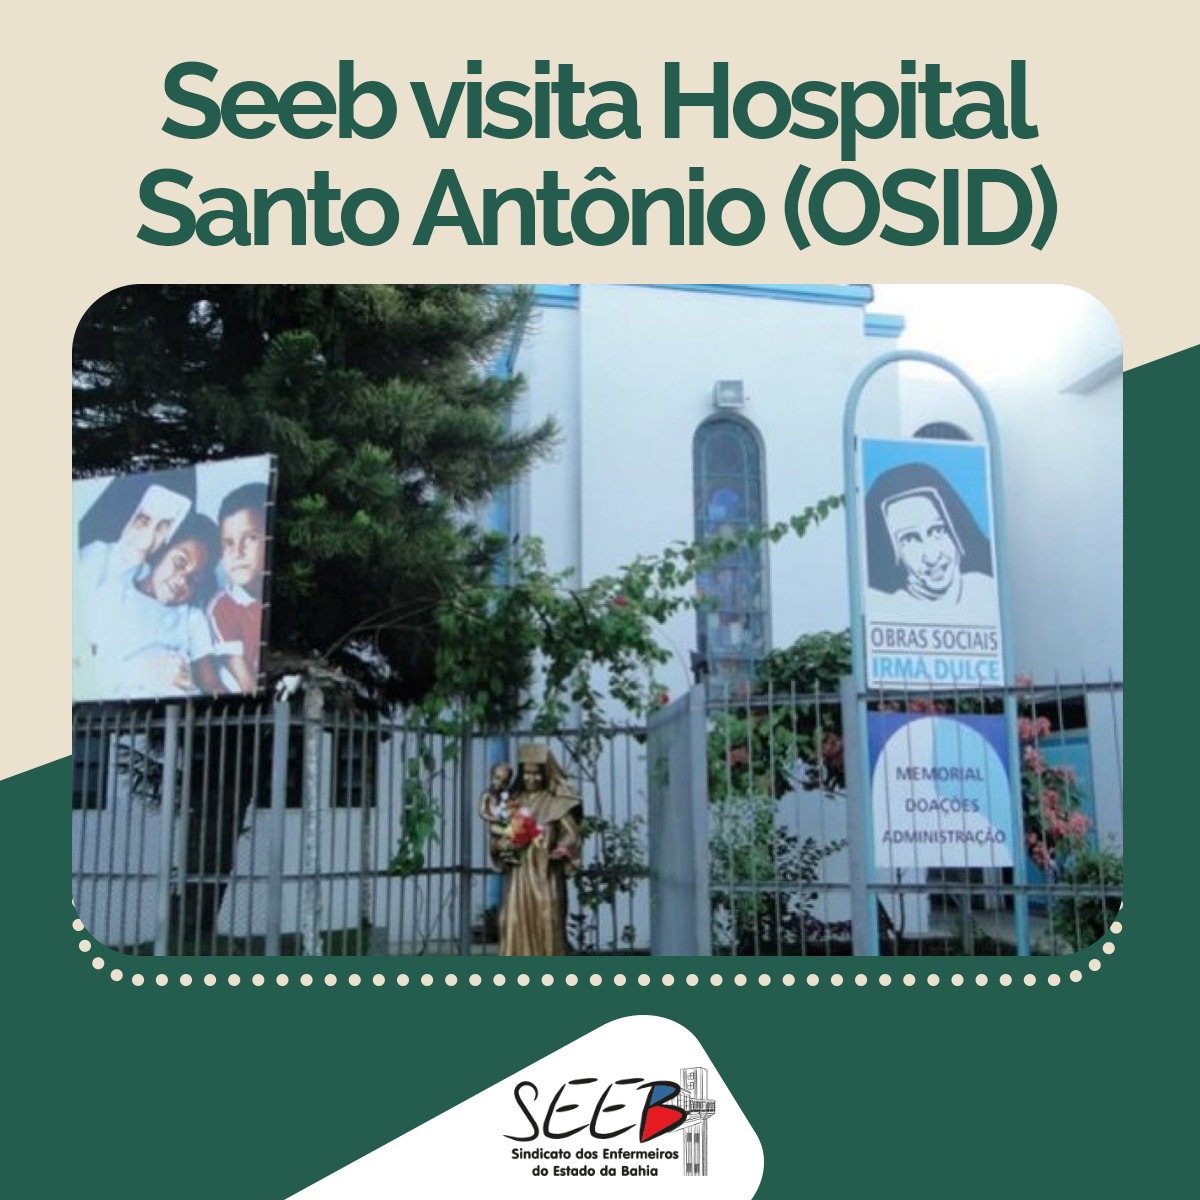 Seeb visita Hospital Santo Antônio (OSID)